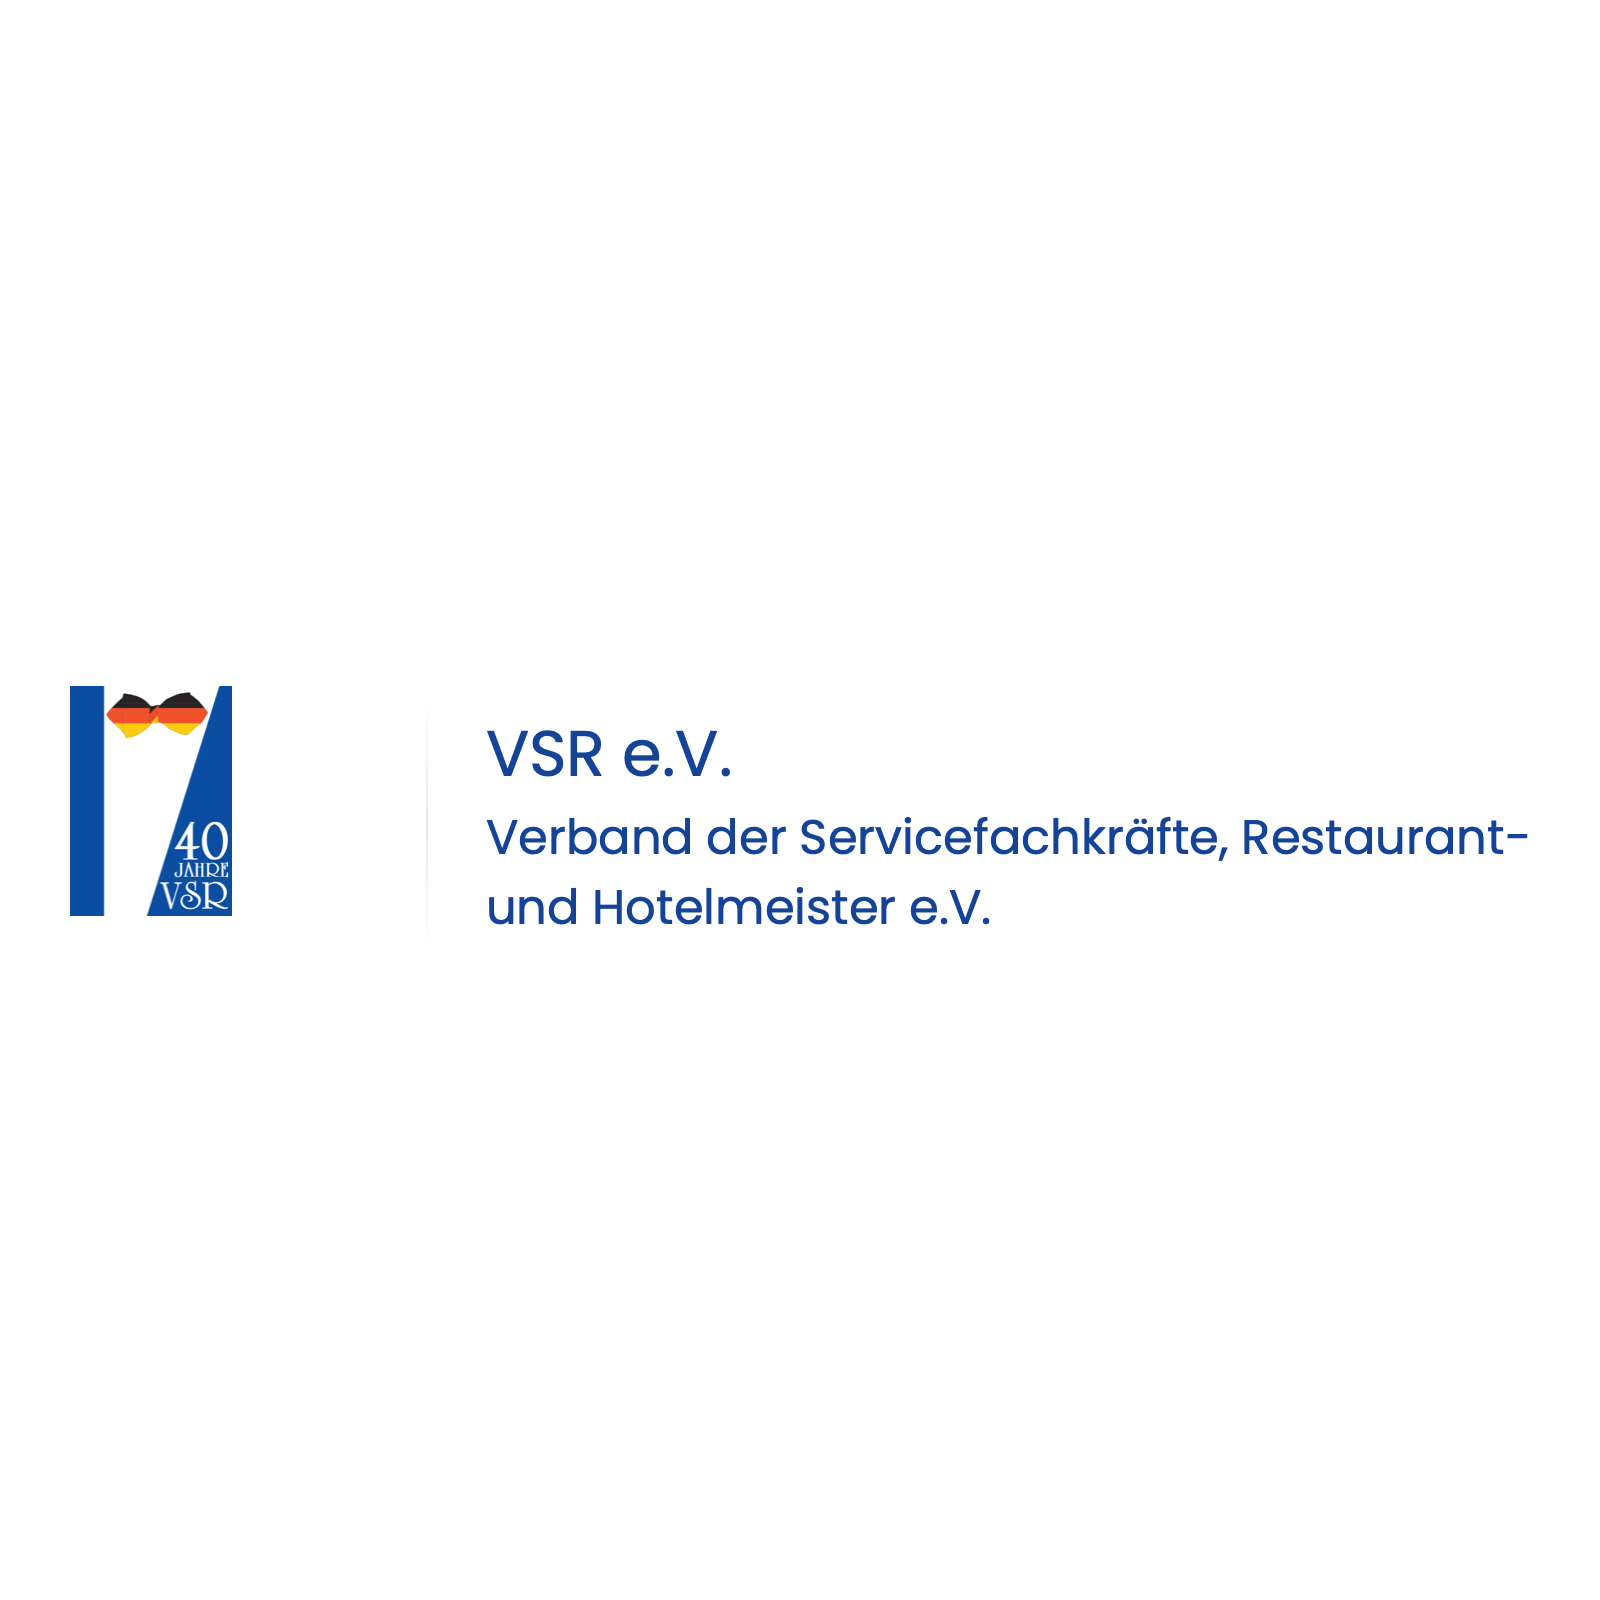 Verband der Servicefachkräfte, Restaurant- und Hotelfachkräfte e.V. in Rosenheim in Oberbayern - Logo